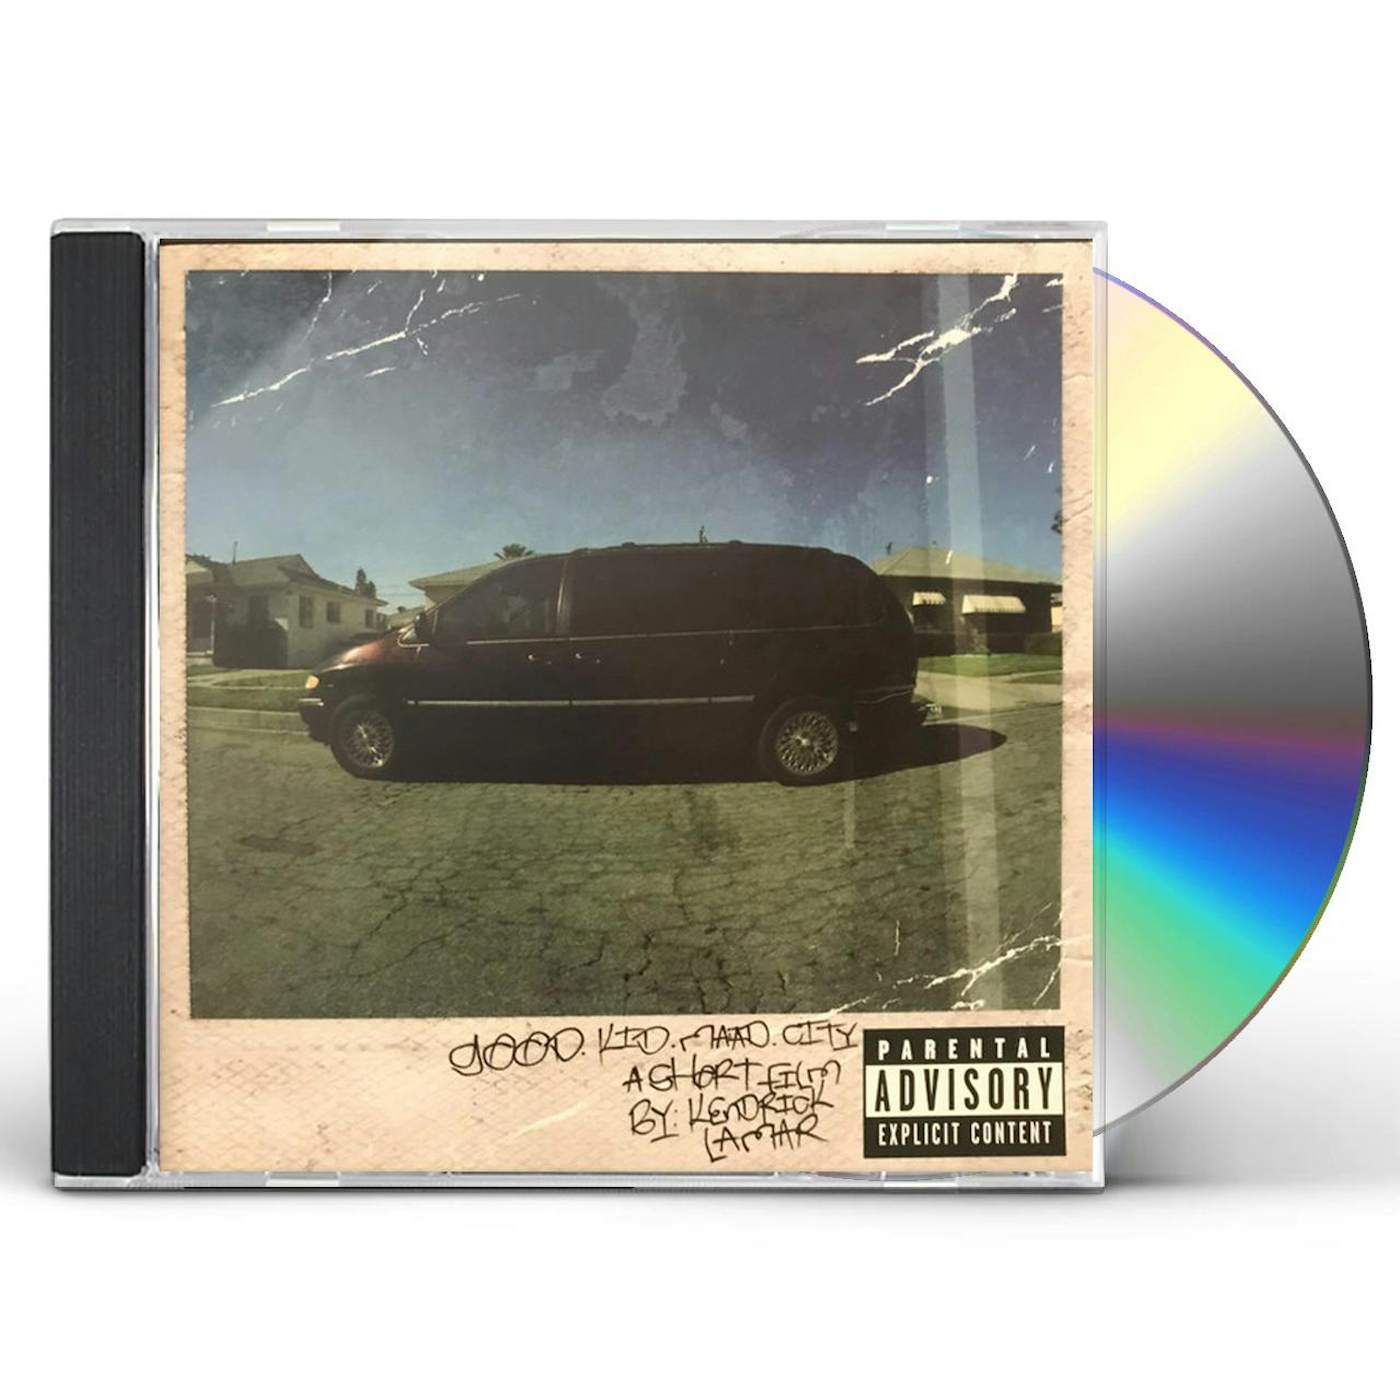 Kendrick Lamar - Good Kid: M.A.A.D City Deluxe CD